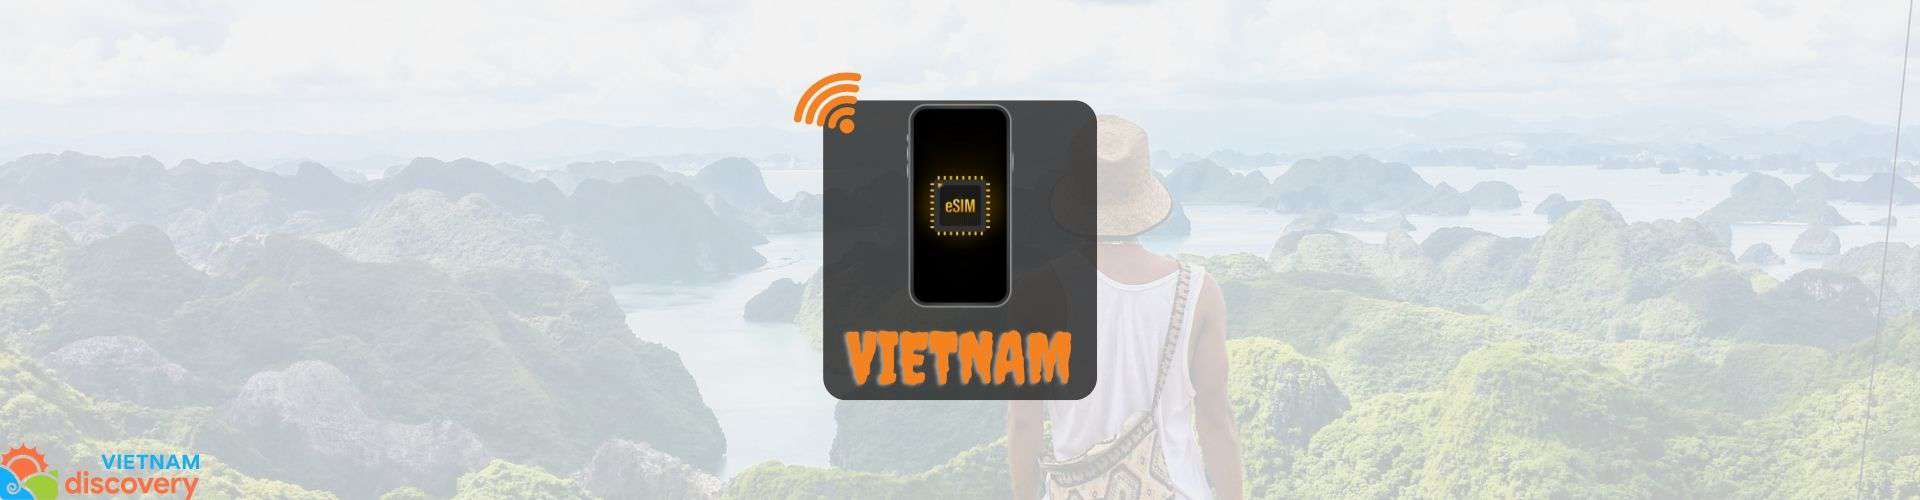 Vietnam eSIM online– Best Data Plan for Vietnam Trip